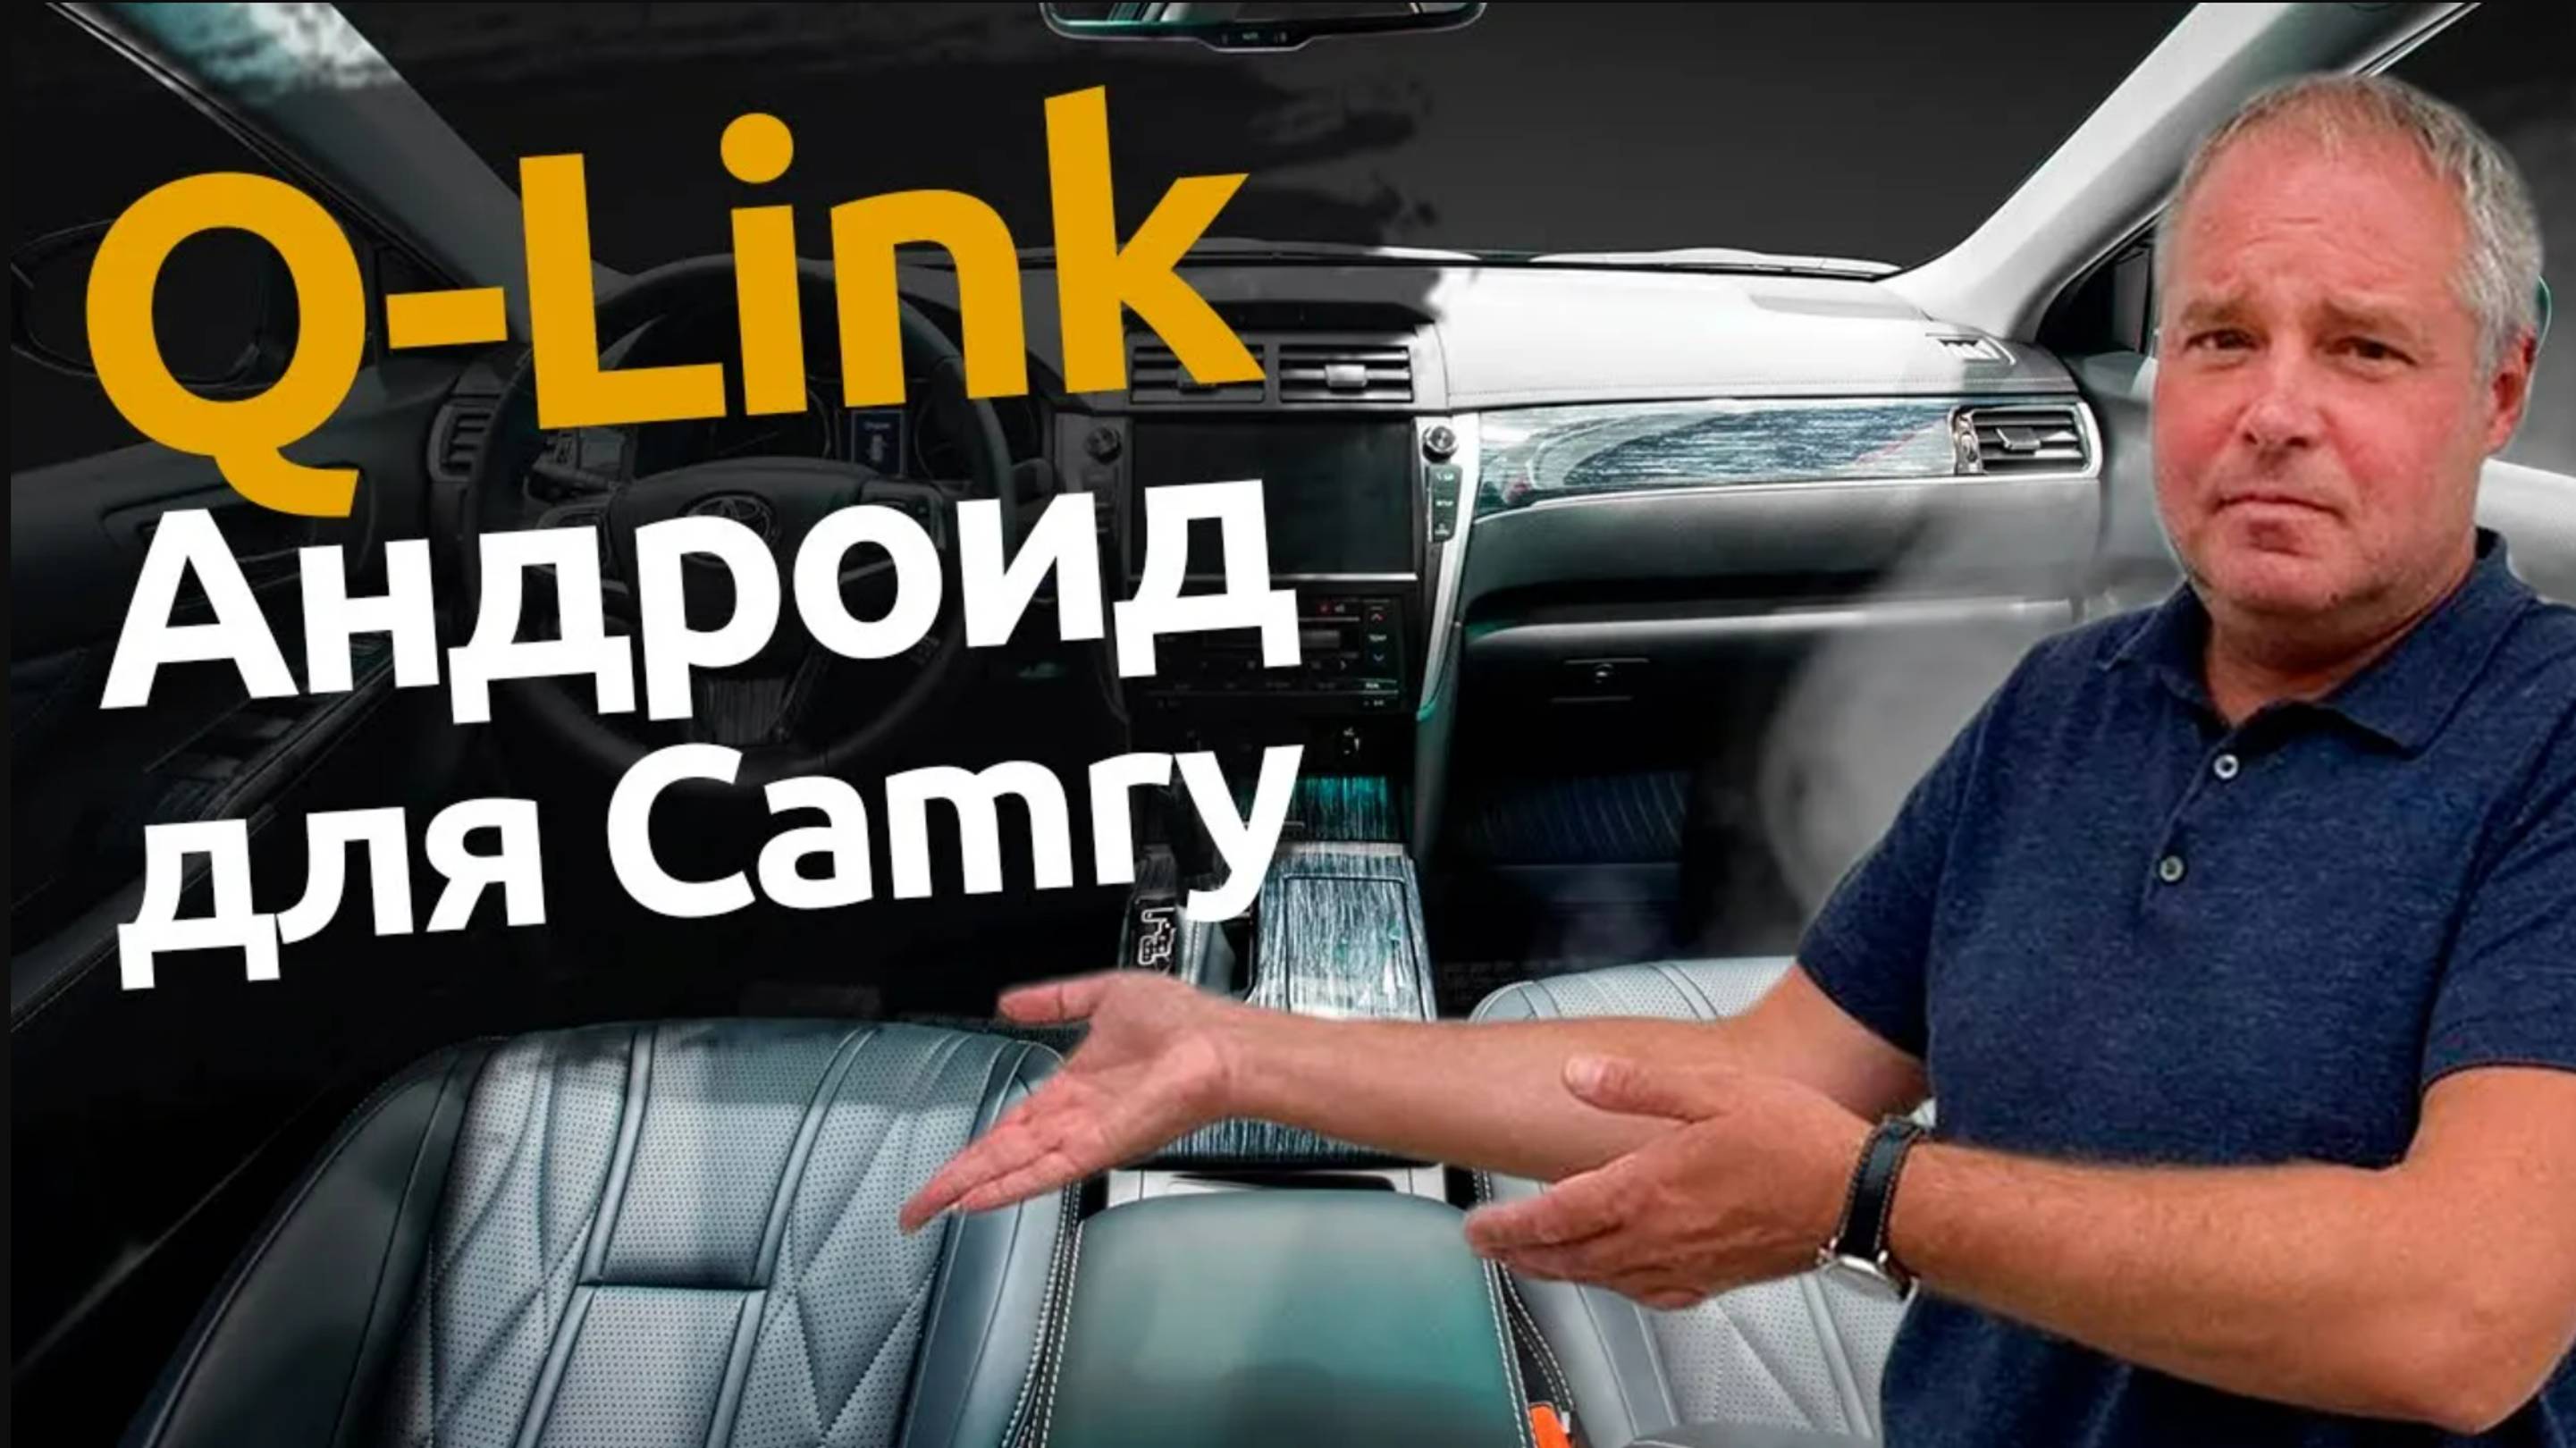 Q-Link: Устройство для передачи андроид на штатный монитор | Toyota Camry